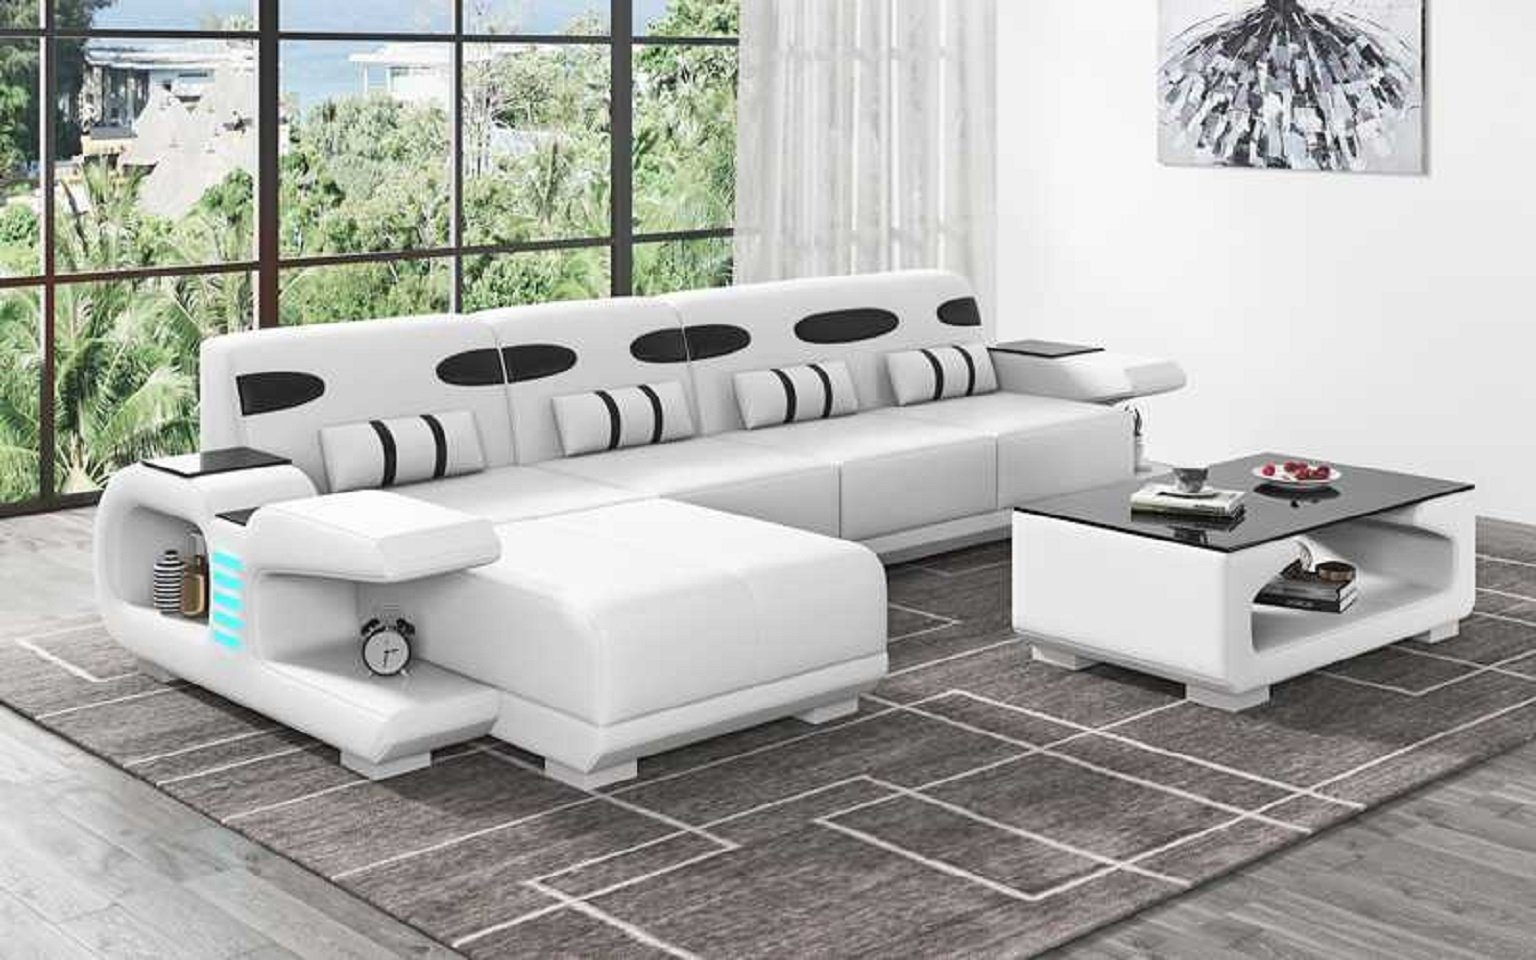 JVmoebel Ecksofa Design Ecksofa L Made Weiß Form Sofas, Europe Modern Sofa in Liege Teile, Kunstleder Ledersofa 3